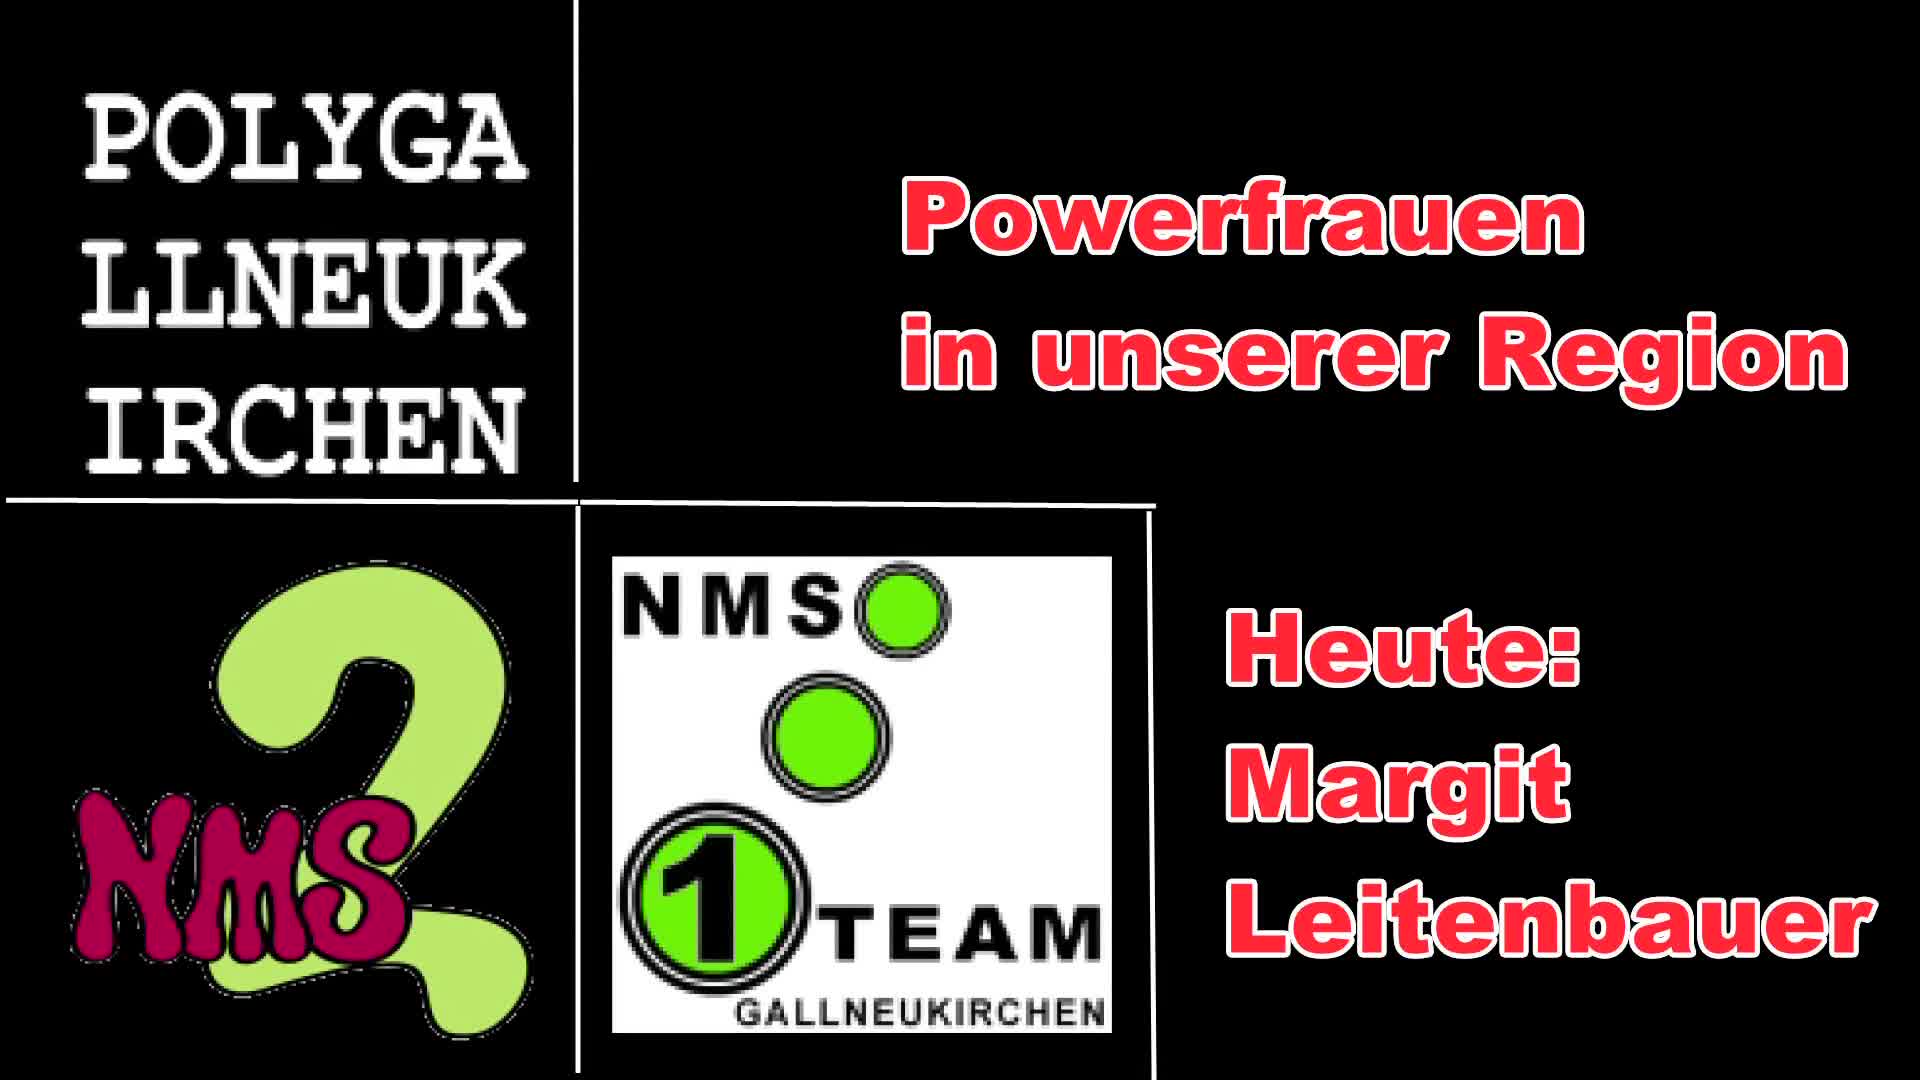 Powerfrauen in unserer Region - Margit Leitenbauer